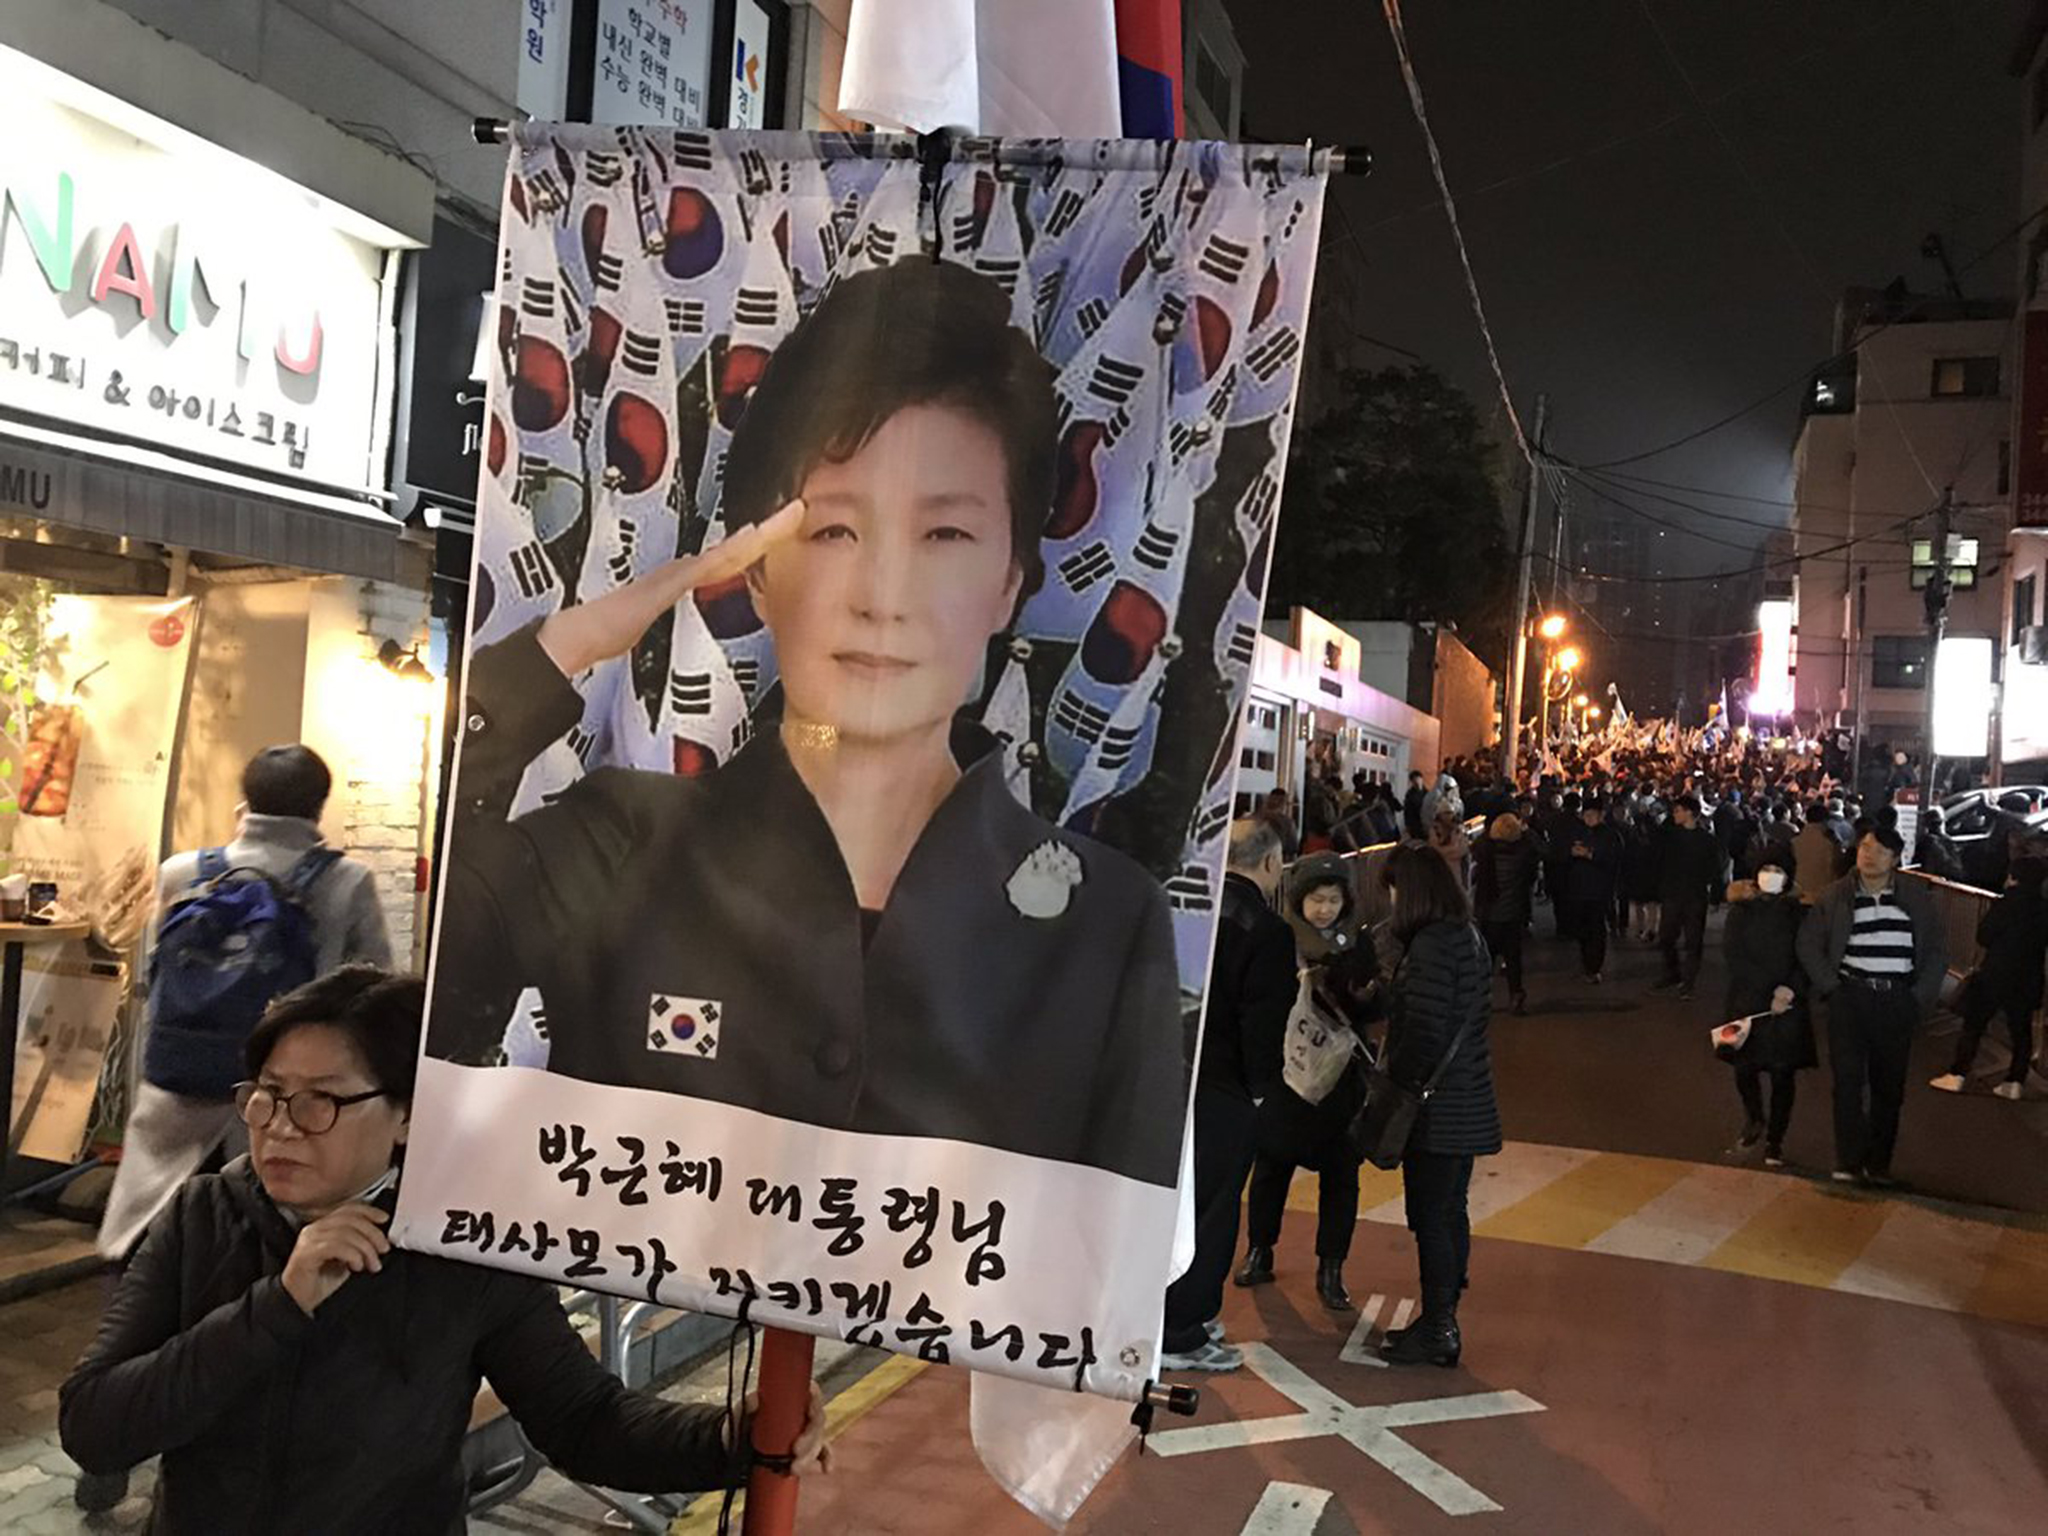 Apoiantes da ex-Presidente sul coreana em confrontos com a polícia